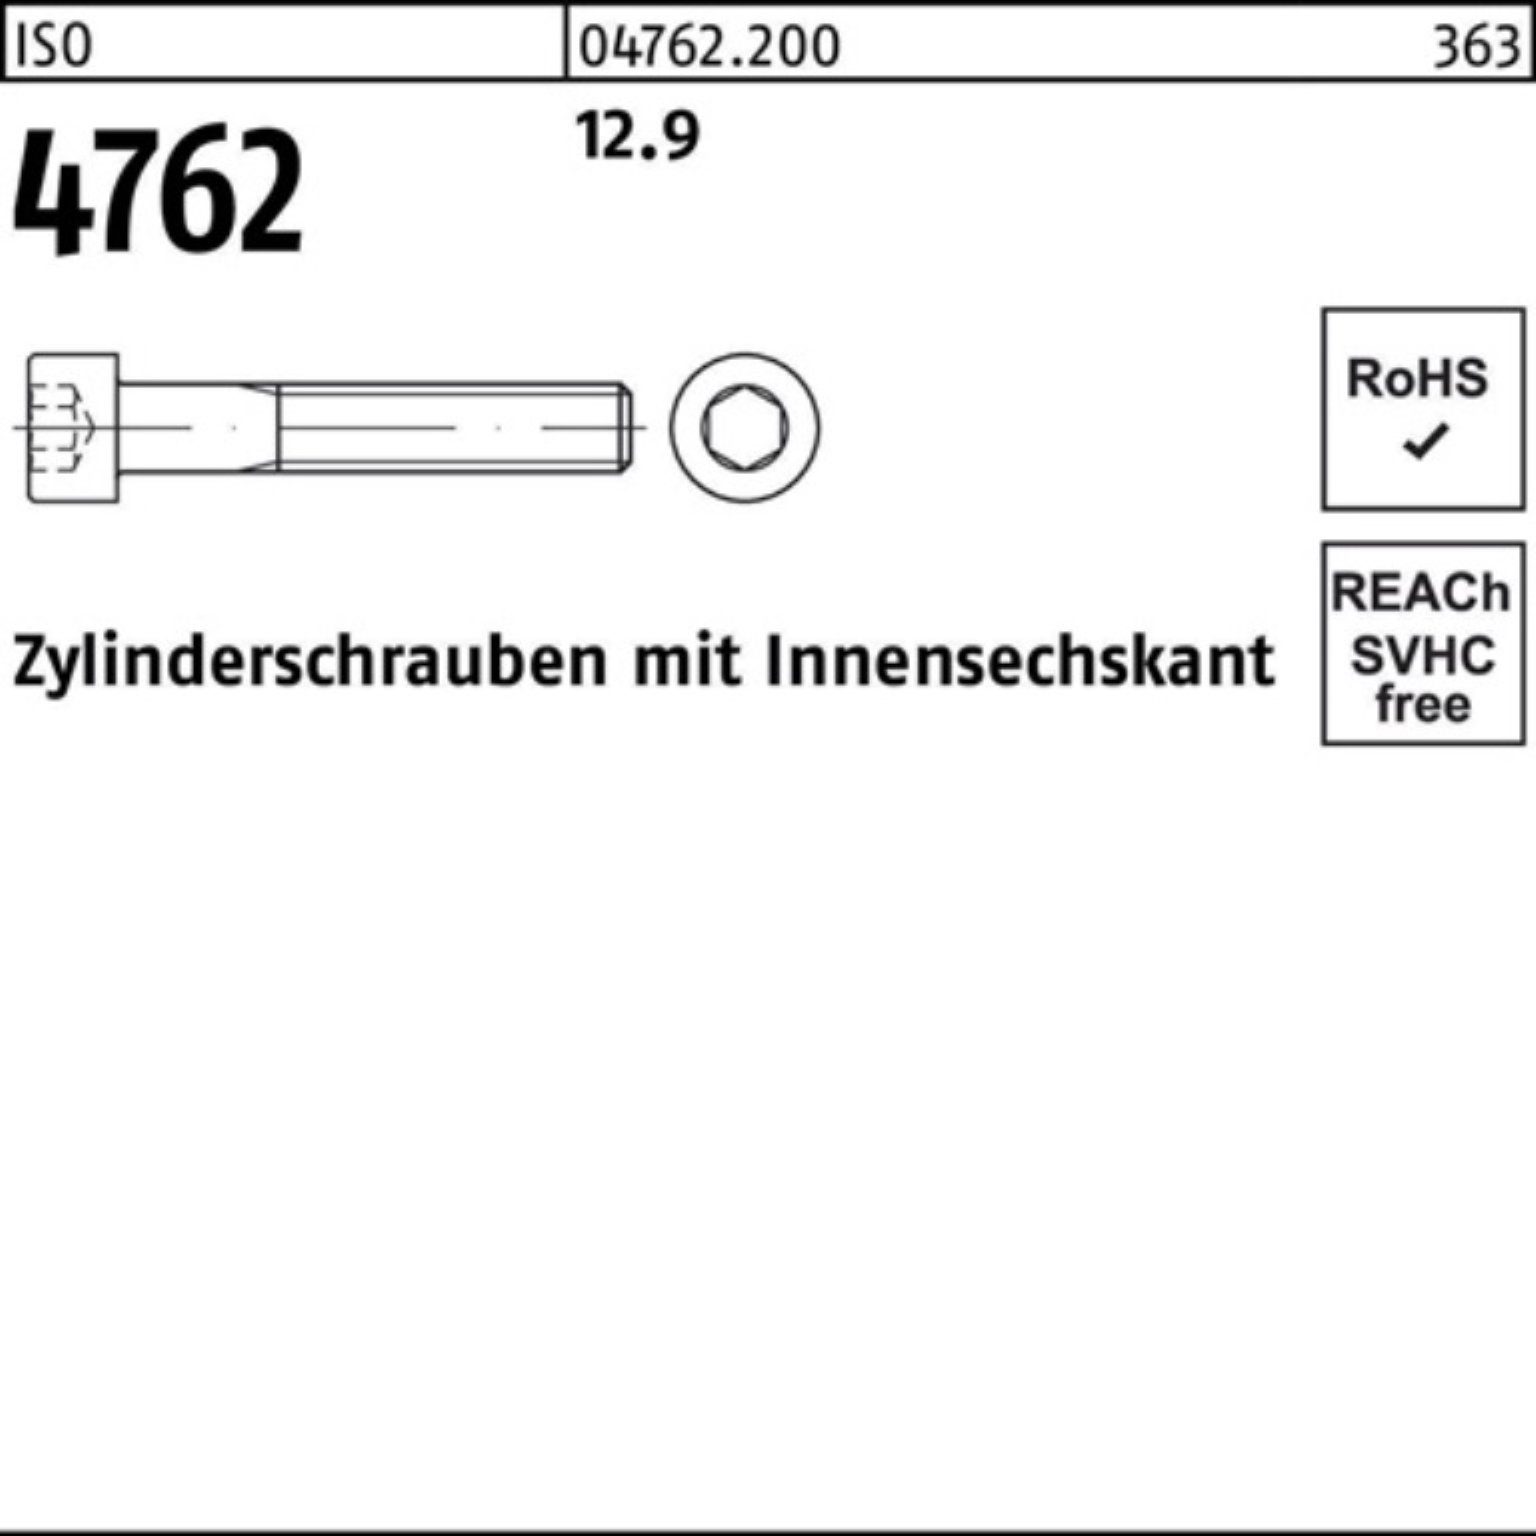 1 ISO Innen-6kt Zylinderschraube Stück 12.9 420 Reyher Pack 100er 4762 M30x Zylinderschraube